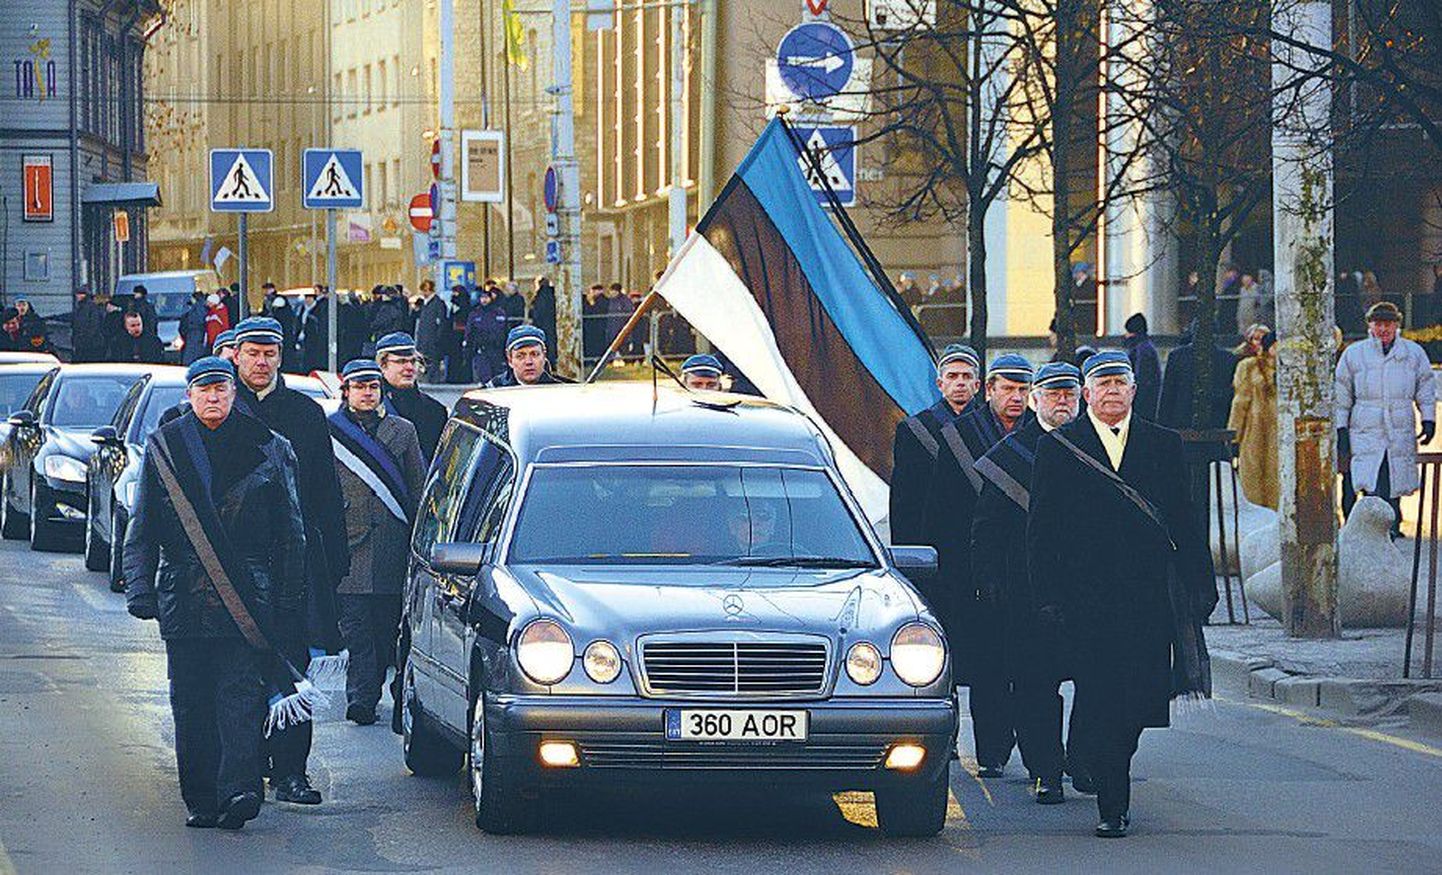 Eesti Üliõpilaste Selts, mille auvilistlane Kross alates 1995. aastast oli, saatmas sarka Kaarli kirikust Harju tänavale, Kirjanike Maja ette.